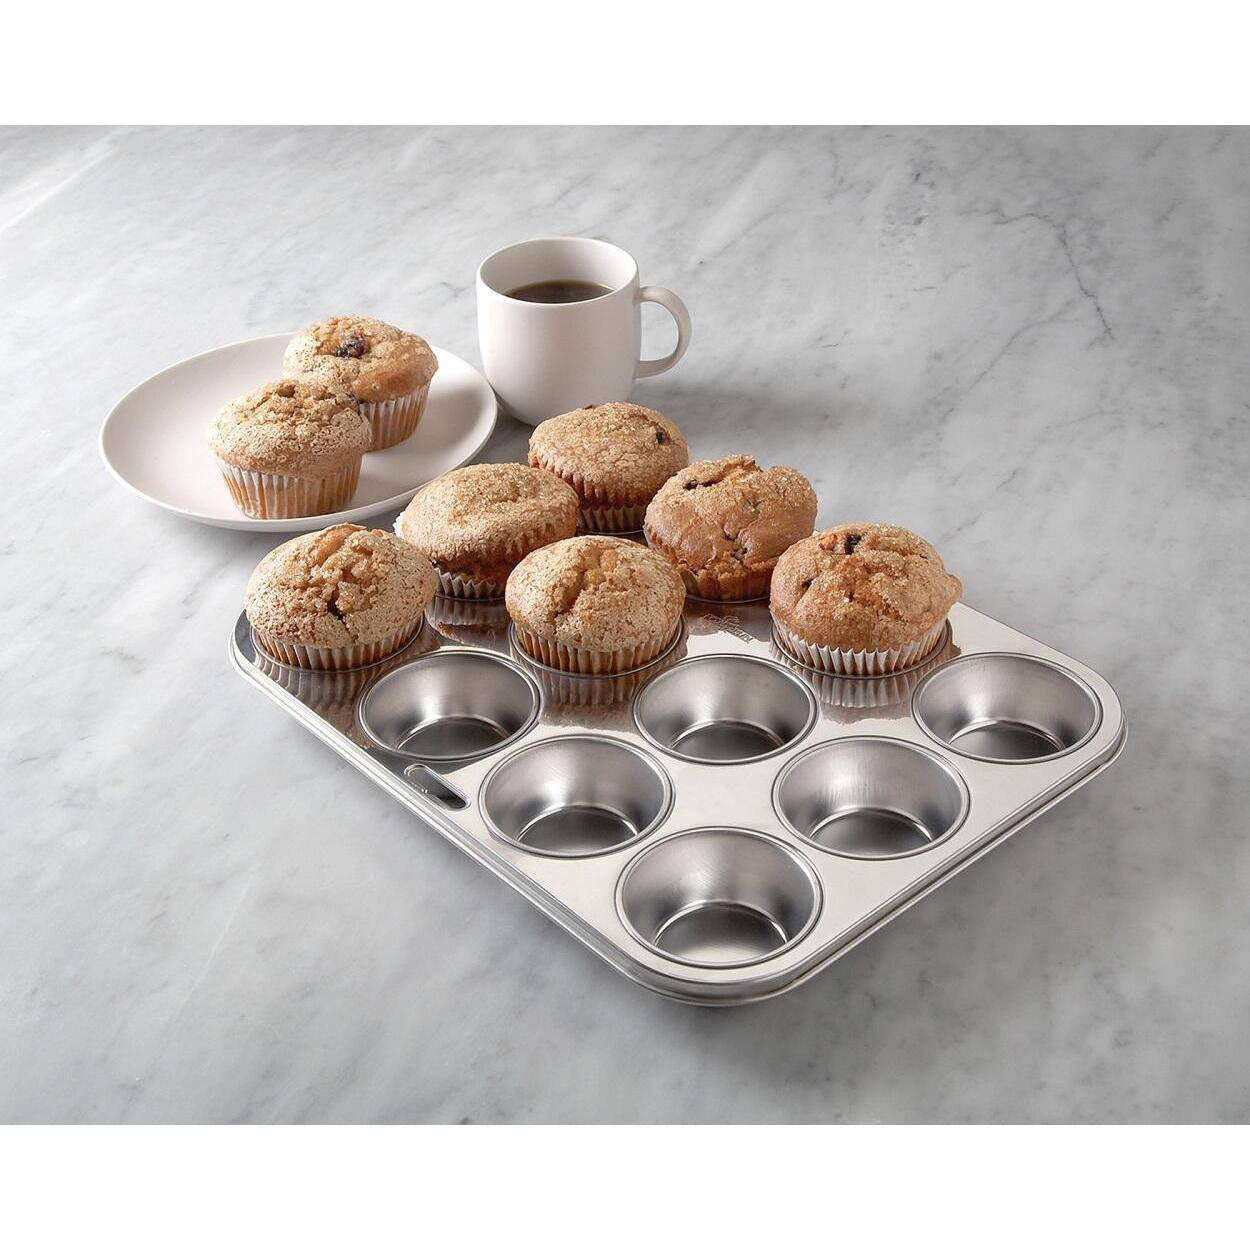 https://naturallifestylemarket.com/cdn/shop/products/fox-run-12-cup-stainless-steel-cupcake-pans-muffin-pans-1250x1250.jpg?v=1666014667